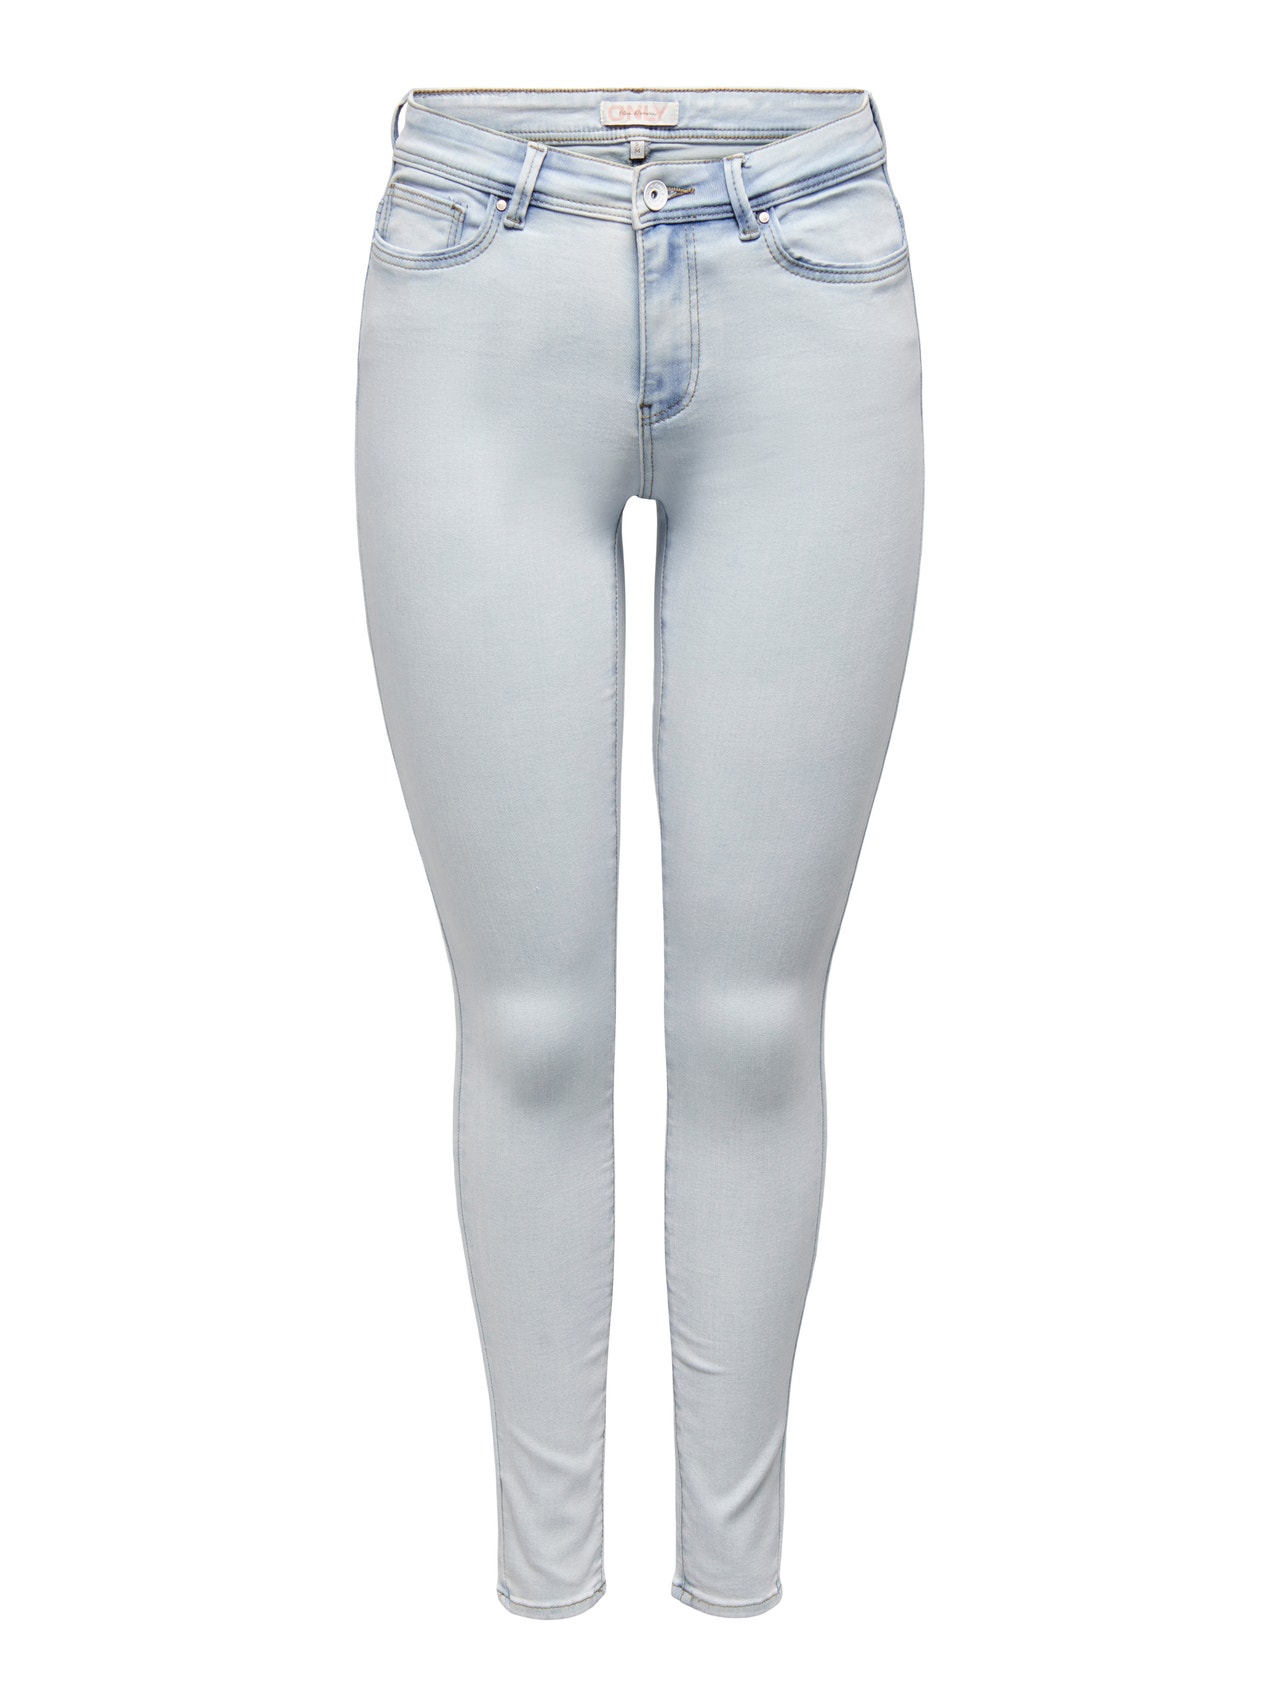 ONLY Skinny Fit Middels høy midje Jeans -Light Blue Bleached Denim - 15281408